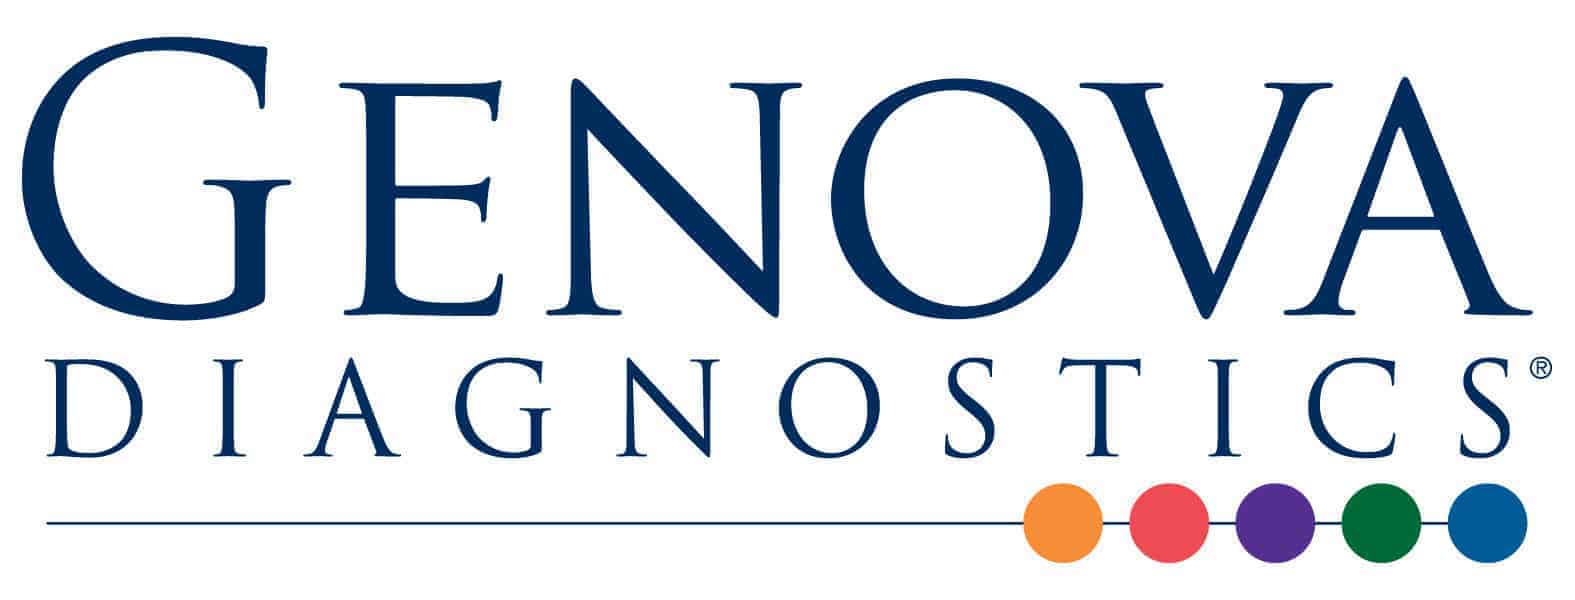 Genova Diagnostics